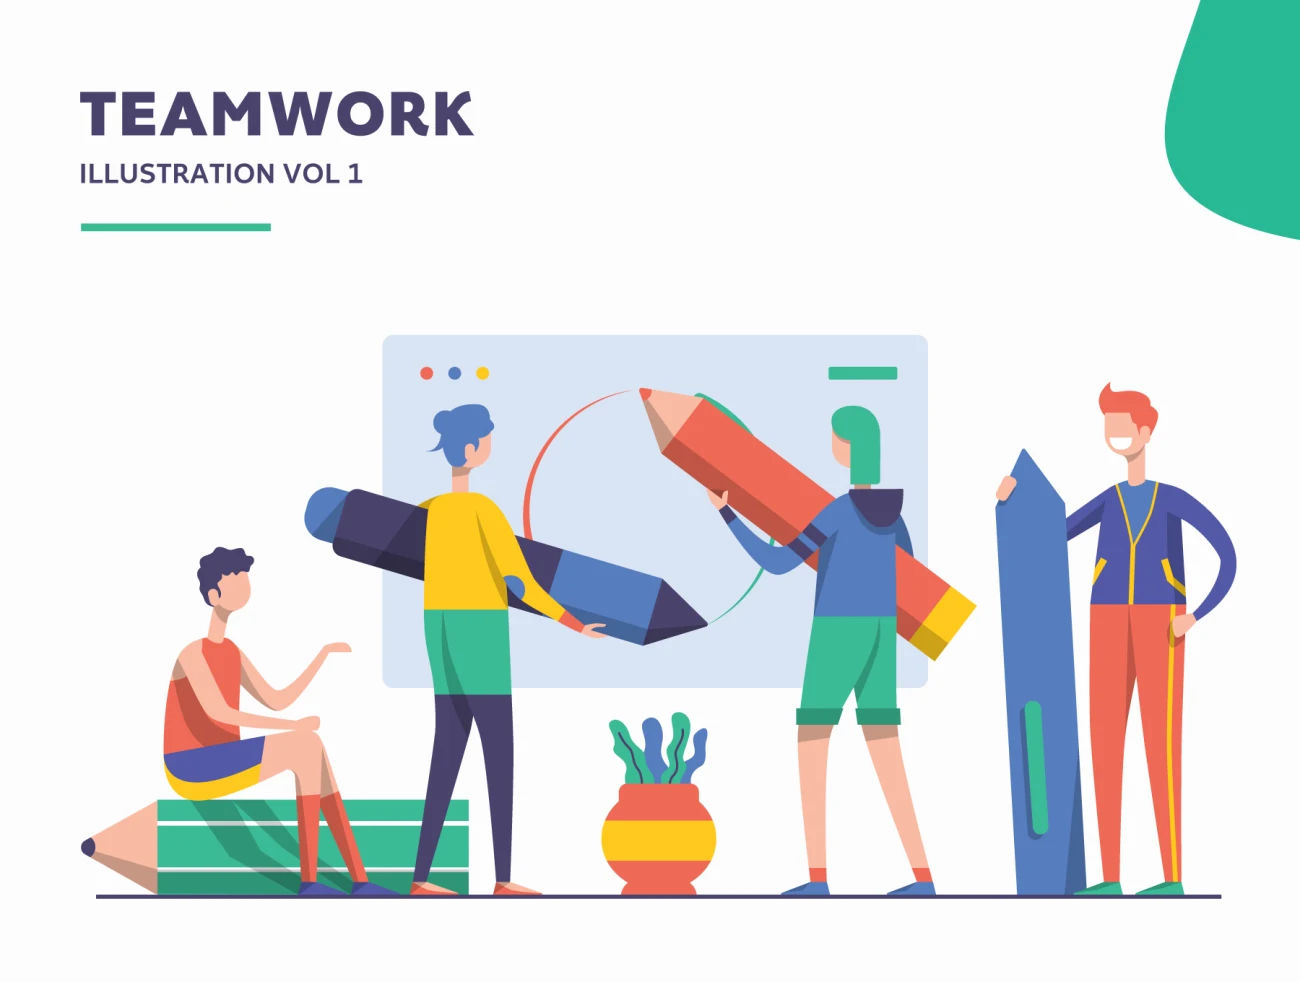 Illustration Startup Teamwork Pack Vol 1 团队合作矢量插画包合集-人物插画、商业金融、场景插画、学习生活、插画、教育医疗、社交购物、线条手绘、职场办公、营销创业、趣味漫画-到位啦UI